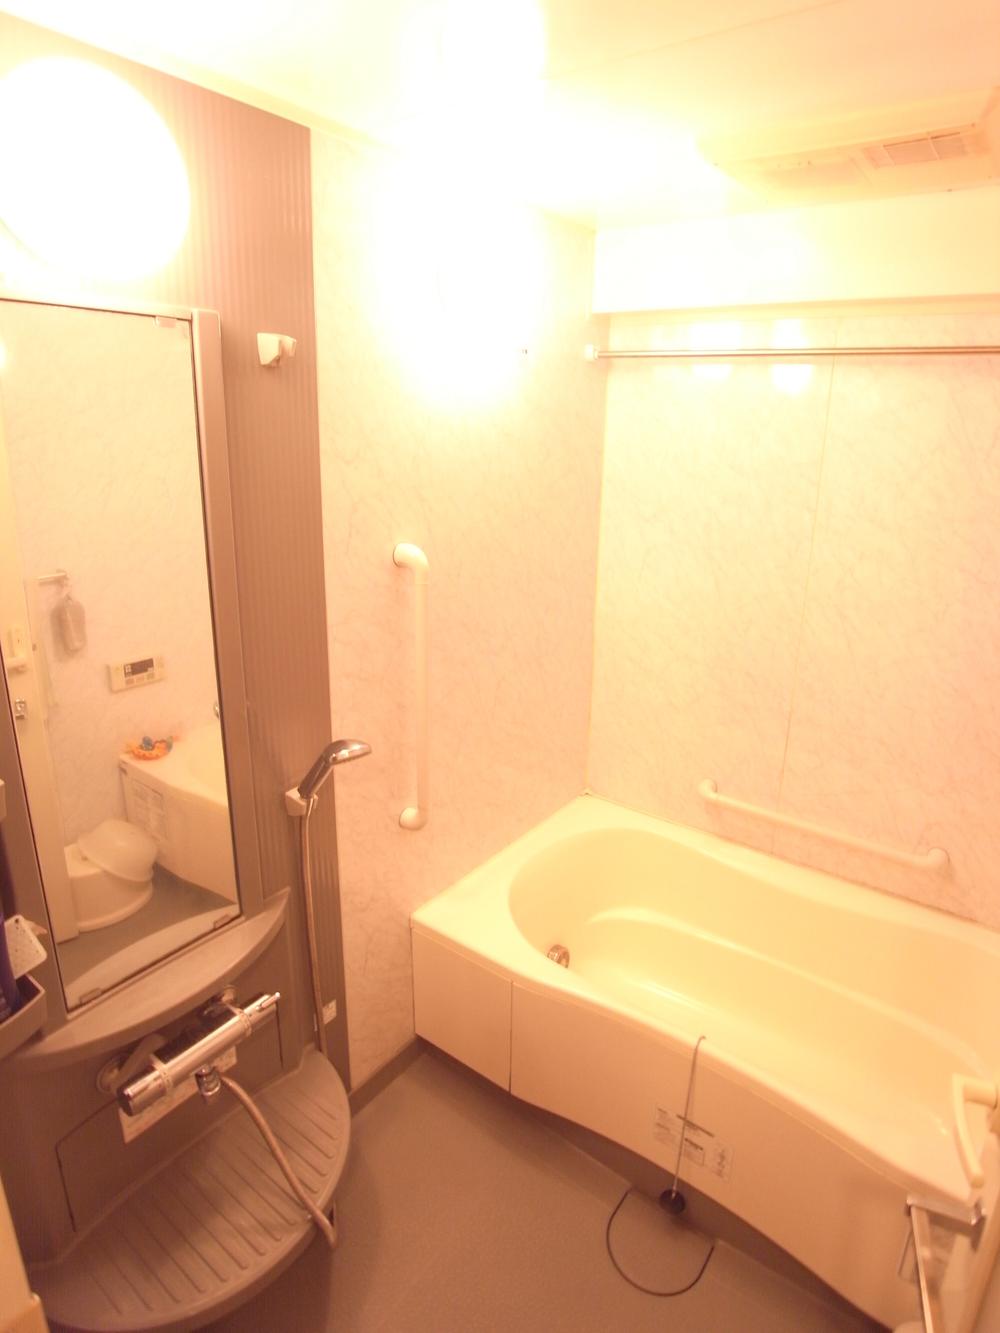 Bathroom. Indoor (2013 November shooting)